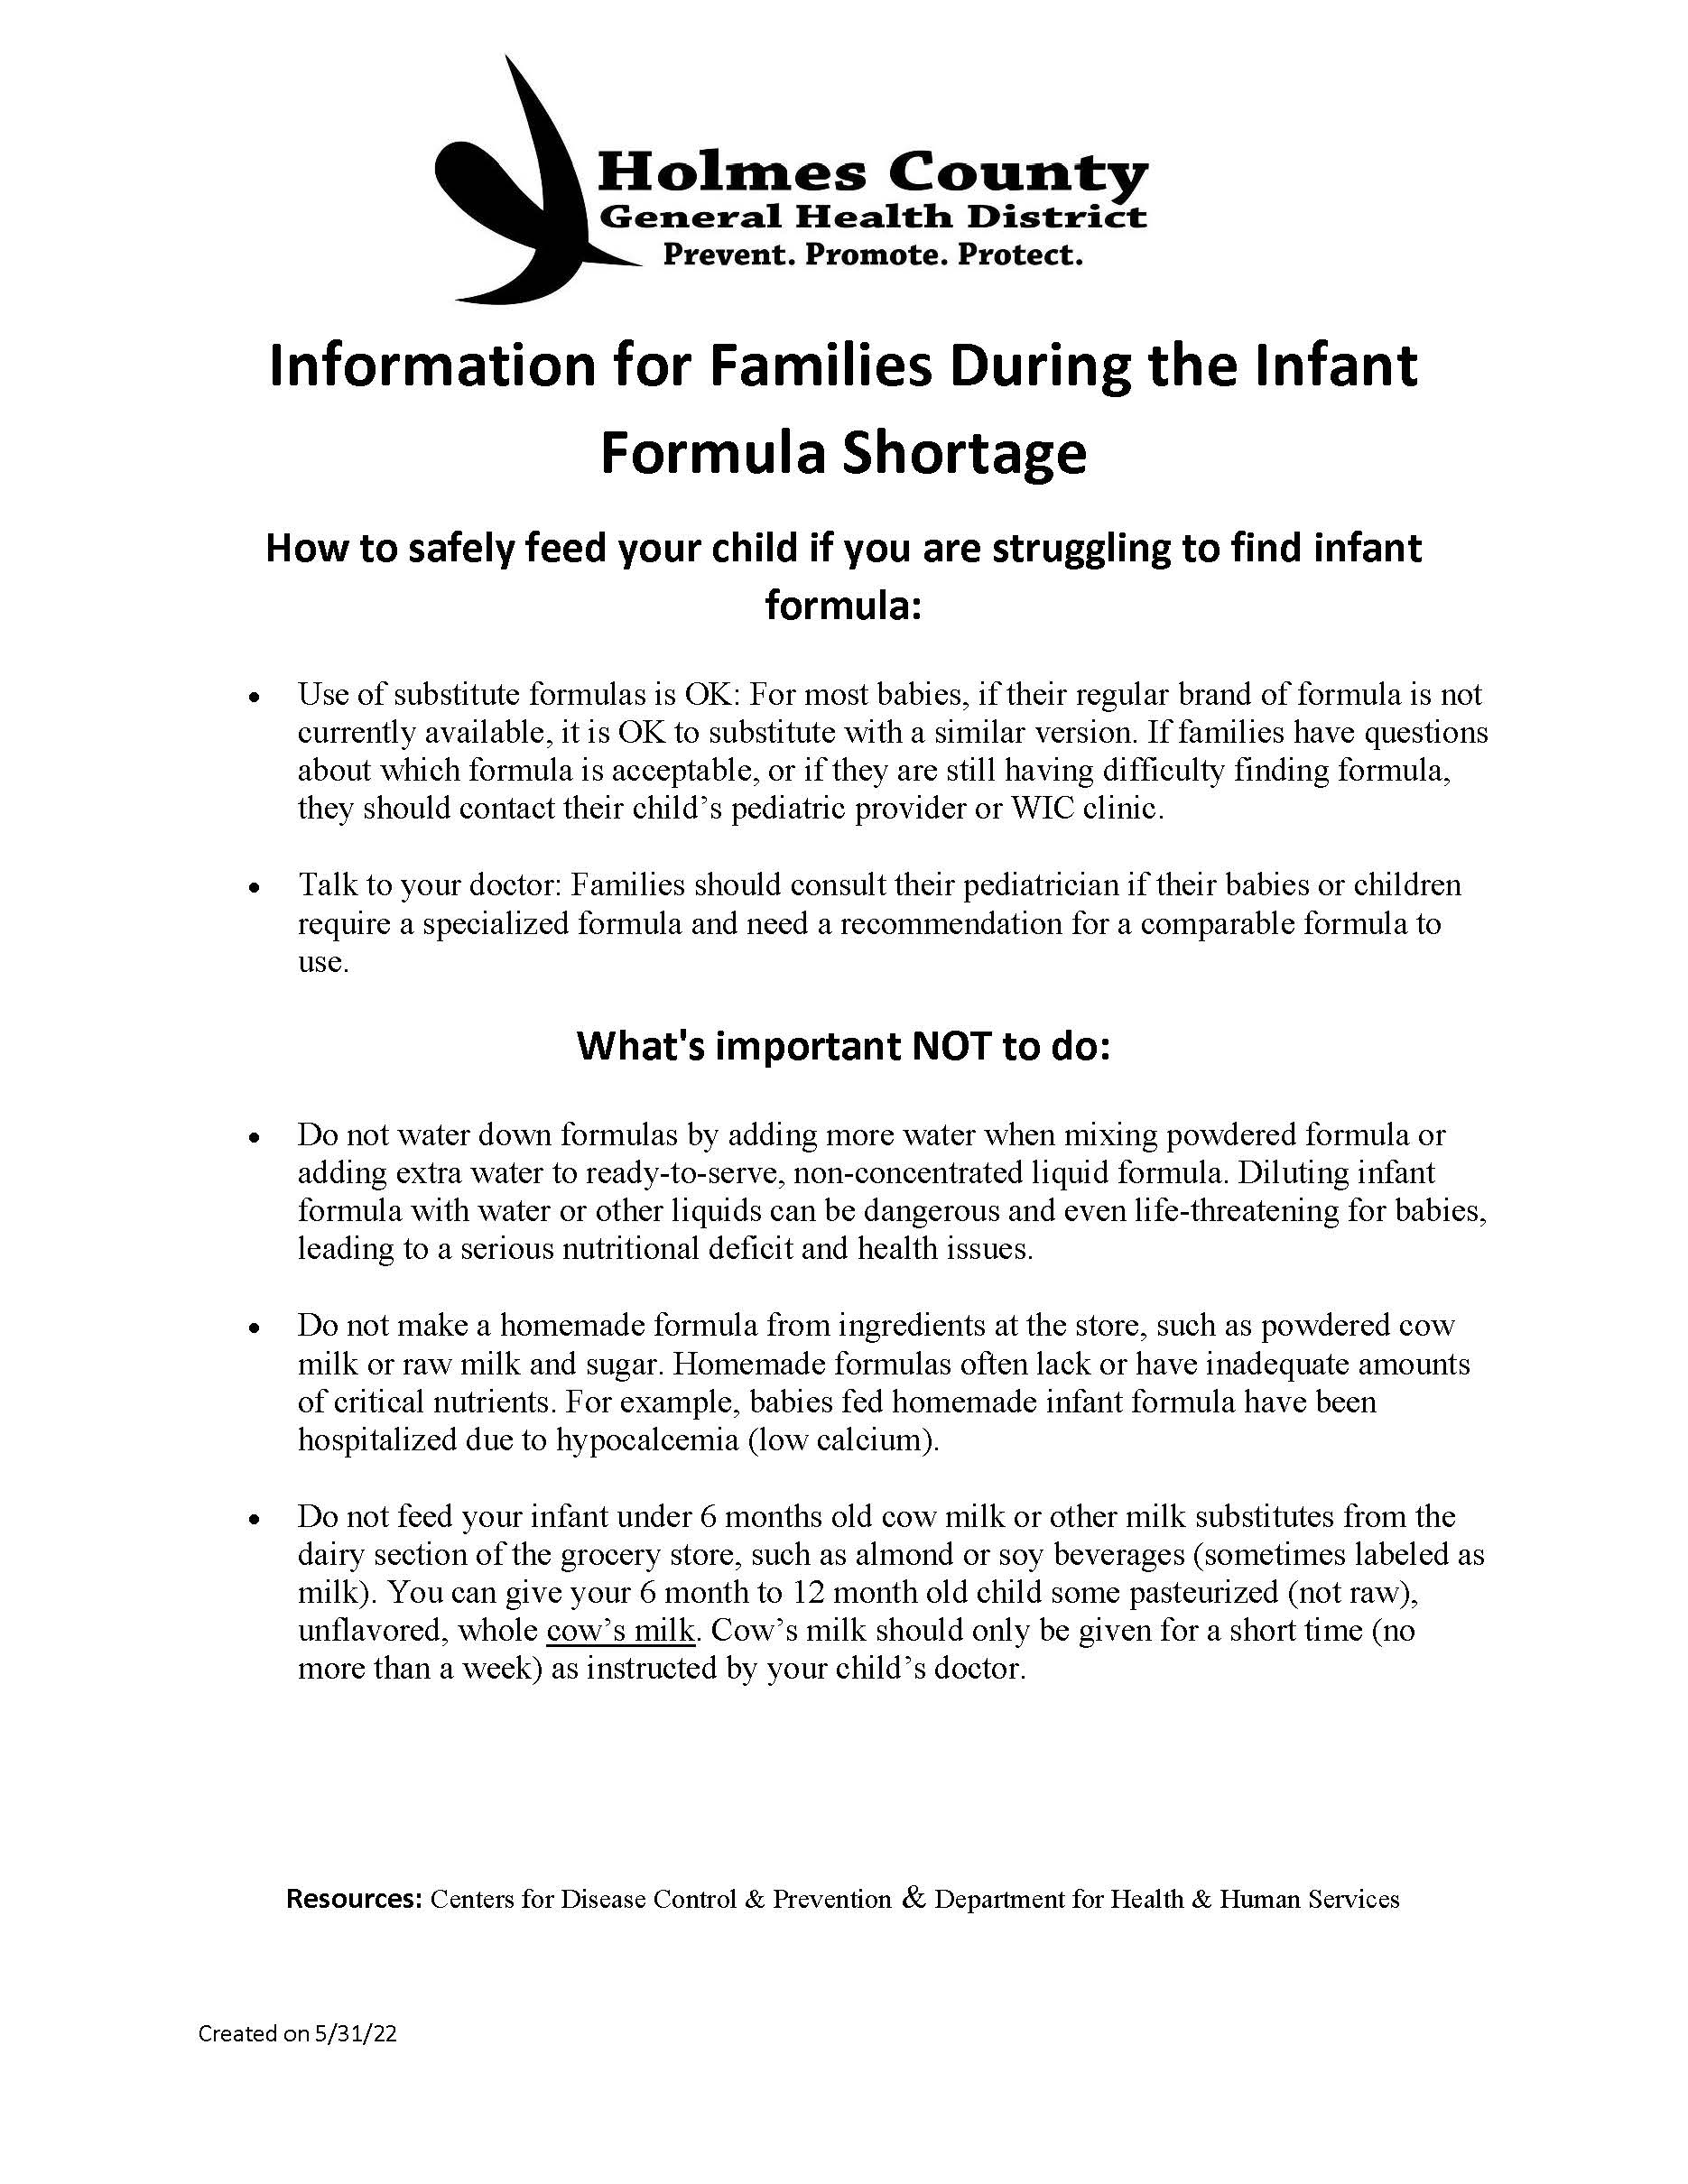 Info on Infant Formula Shortage